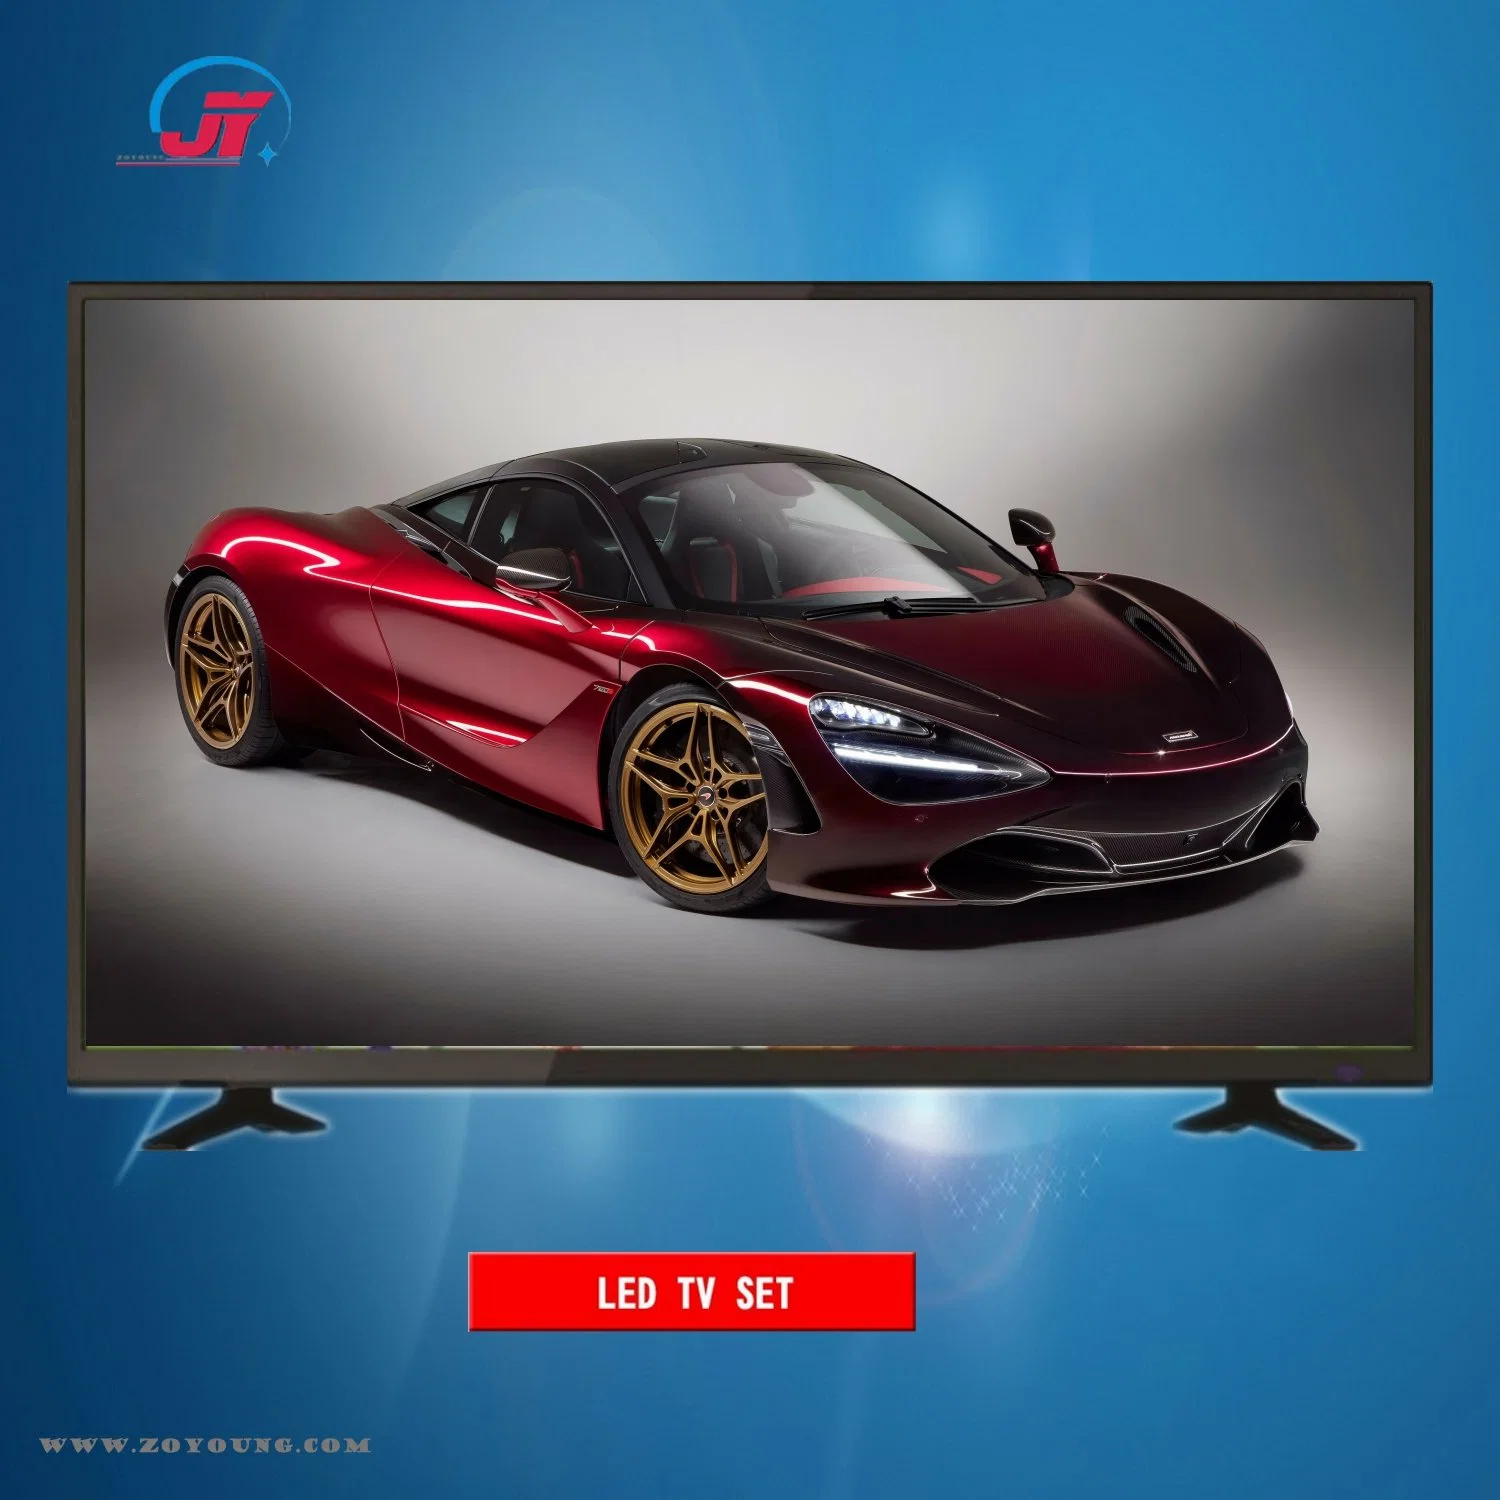 شاشة العرض الرئيسية من OEM شاشة عرض بحجم 43 بوصة تعمل بتقنية FHD Android DVB-T2/S2 LED Digital تلفزيون ذكي بالألوان تلفزيون